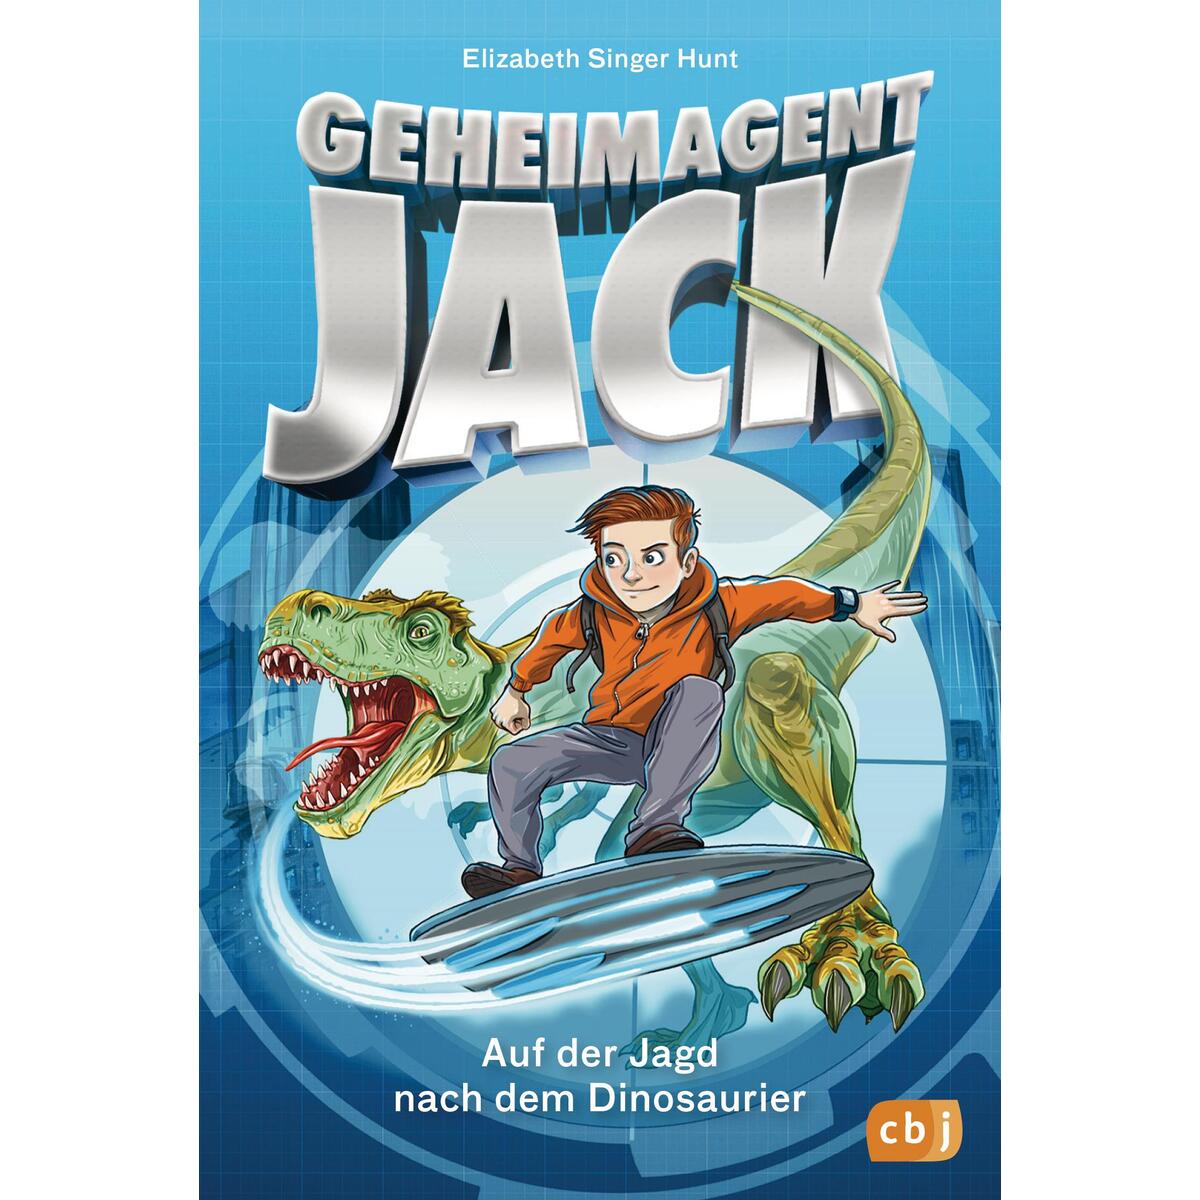 Geheimagent Jack - Auf der Jagd nach dem Dinosaurier von cbj